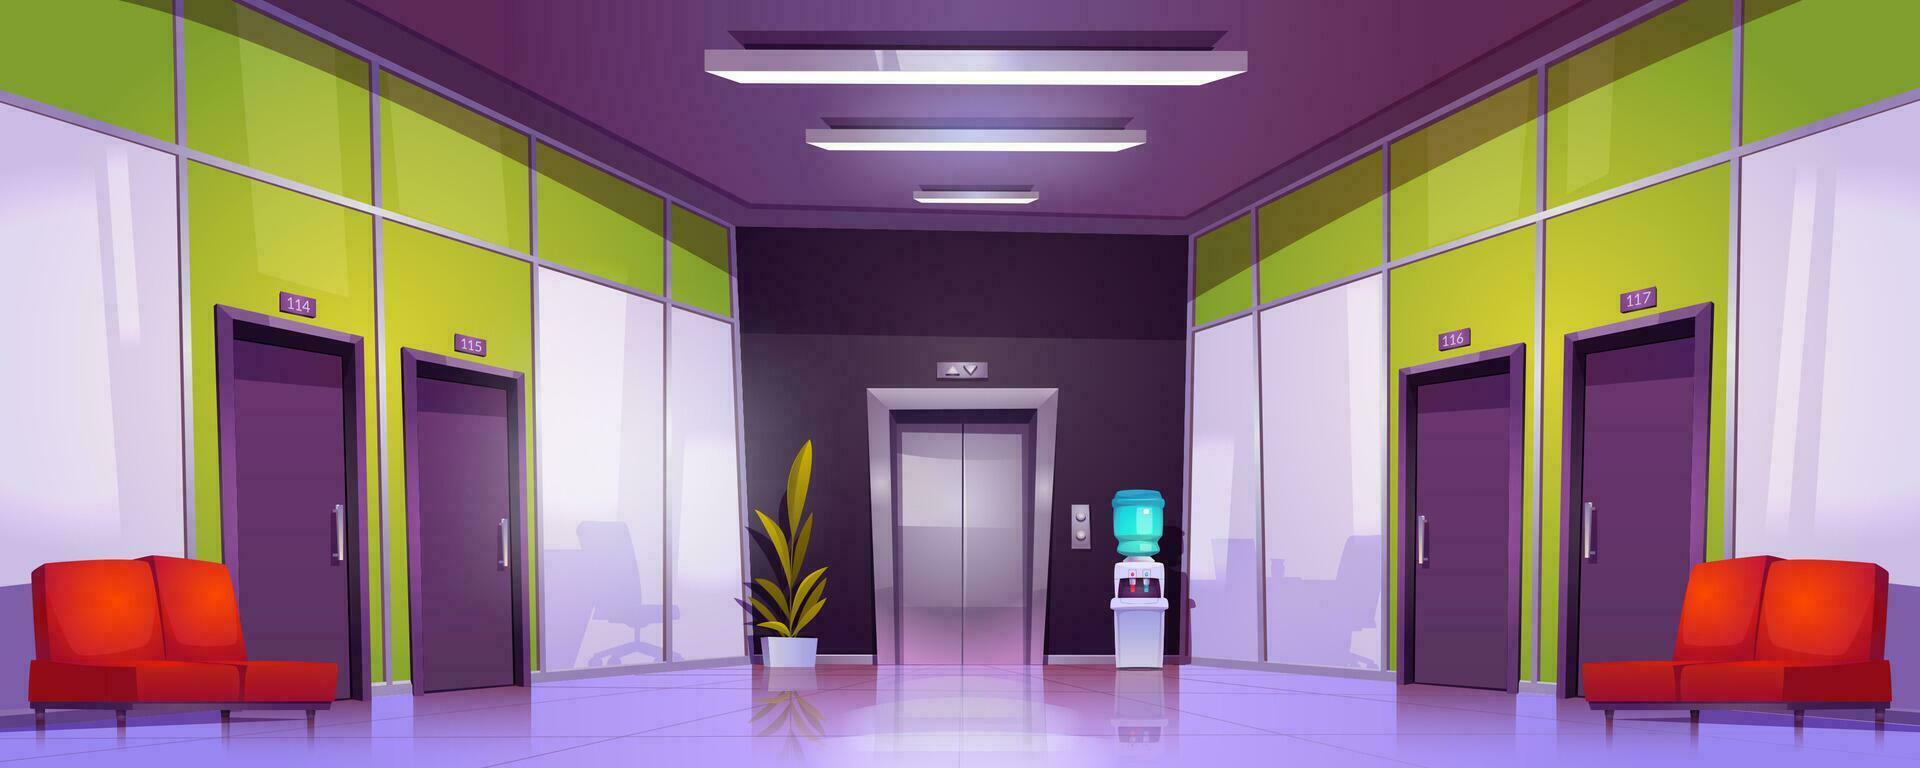 escritório corredor interior com portas e elevador vetor